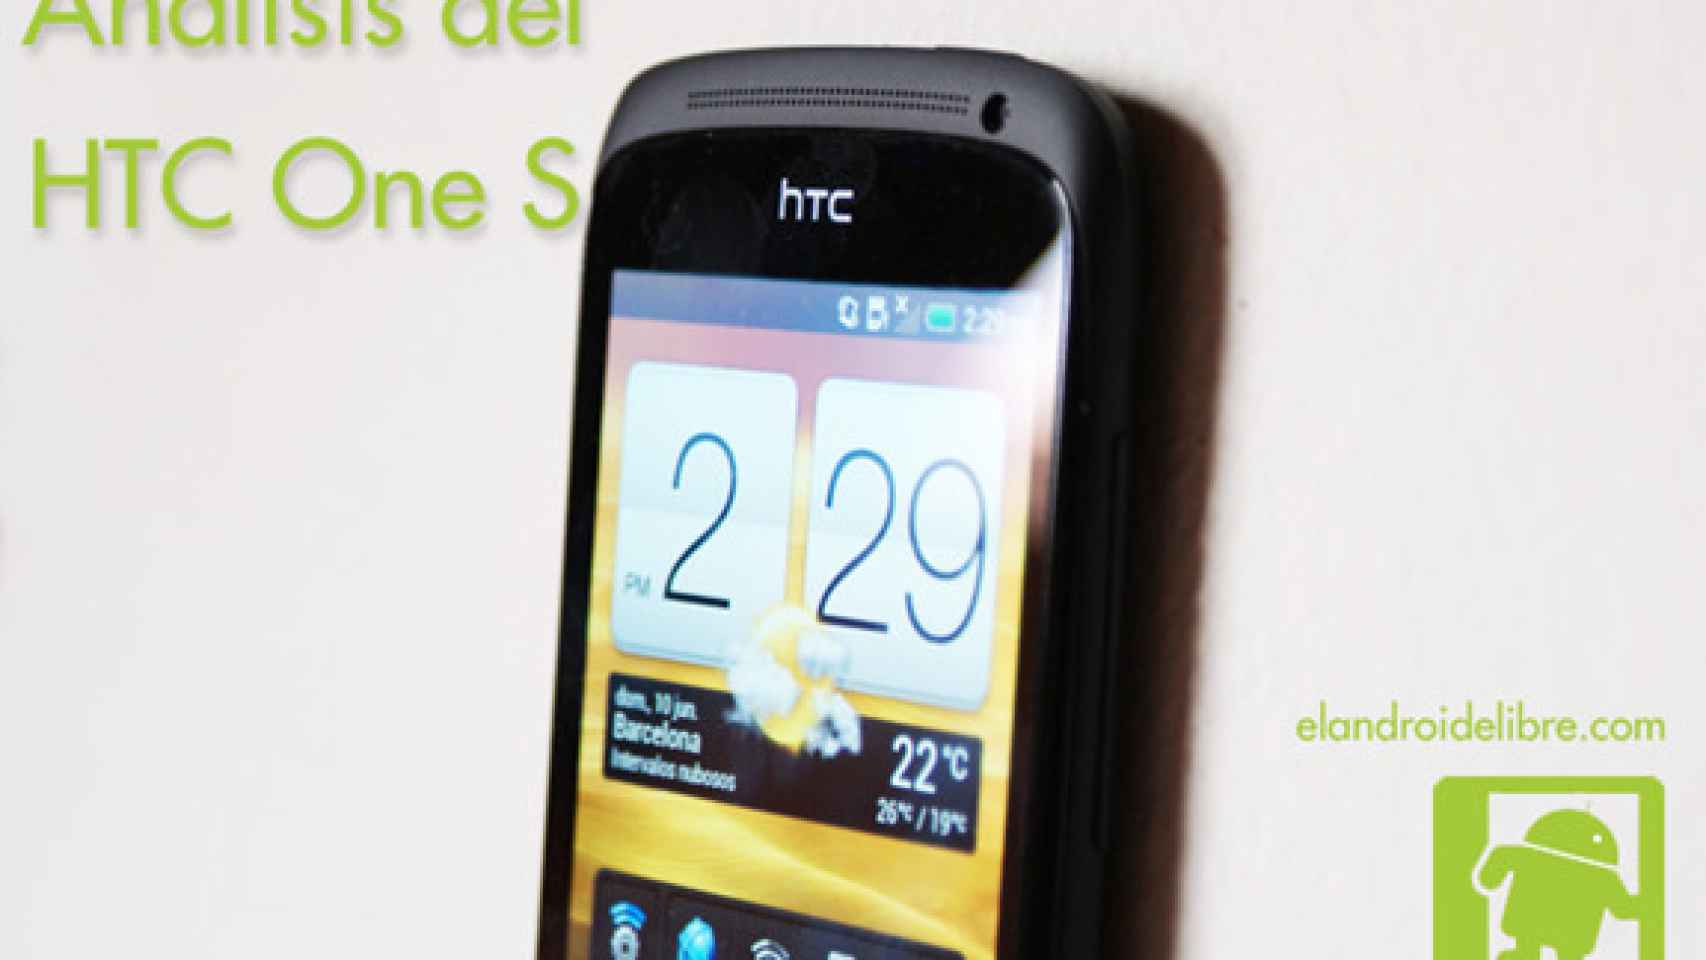 HTC One S: Análisis a fondo y experiencia de uso